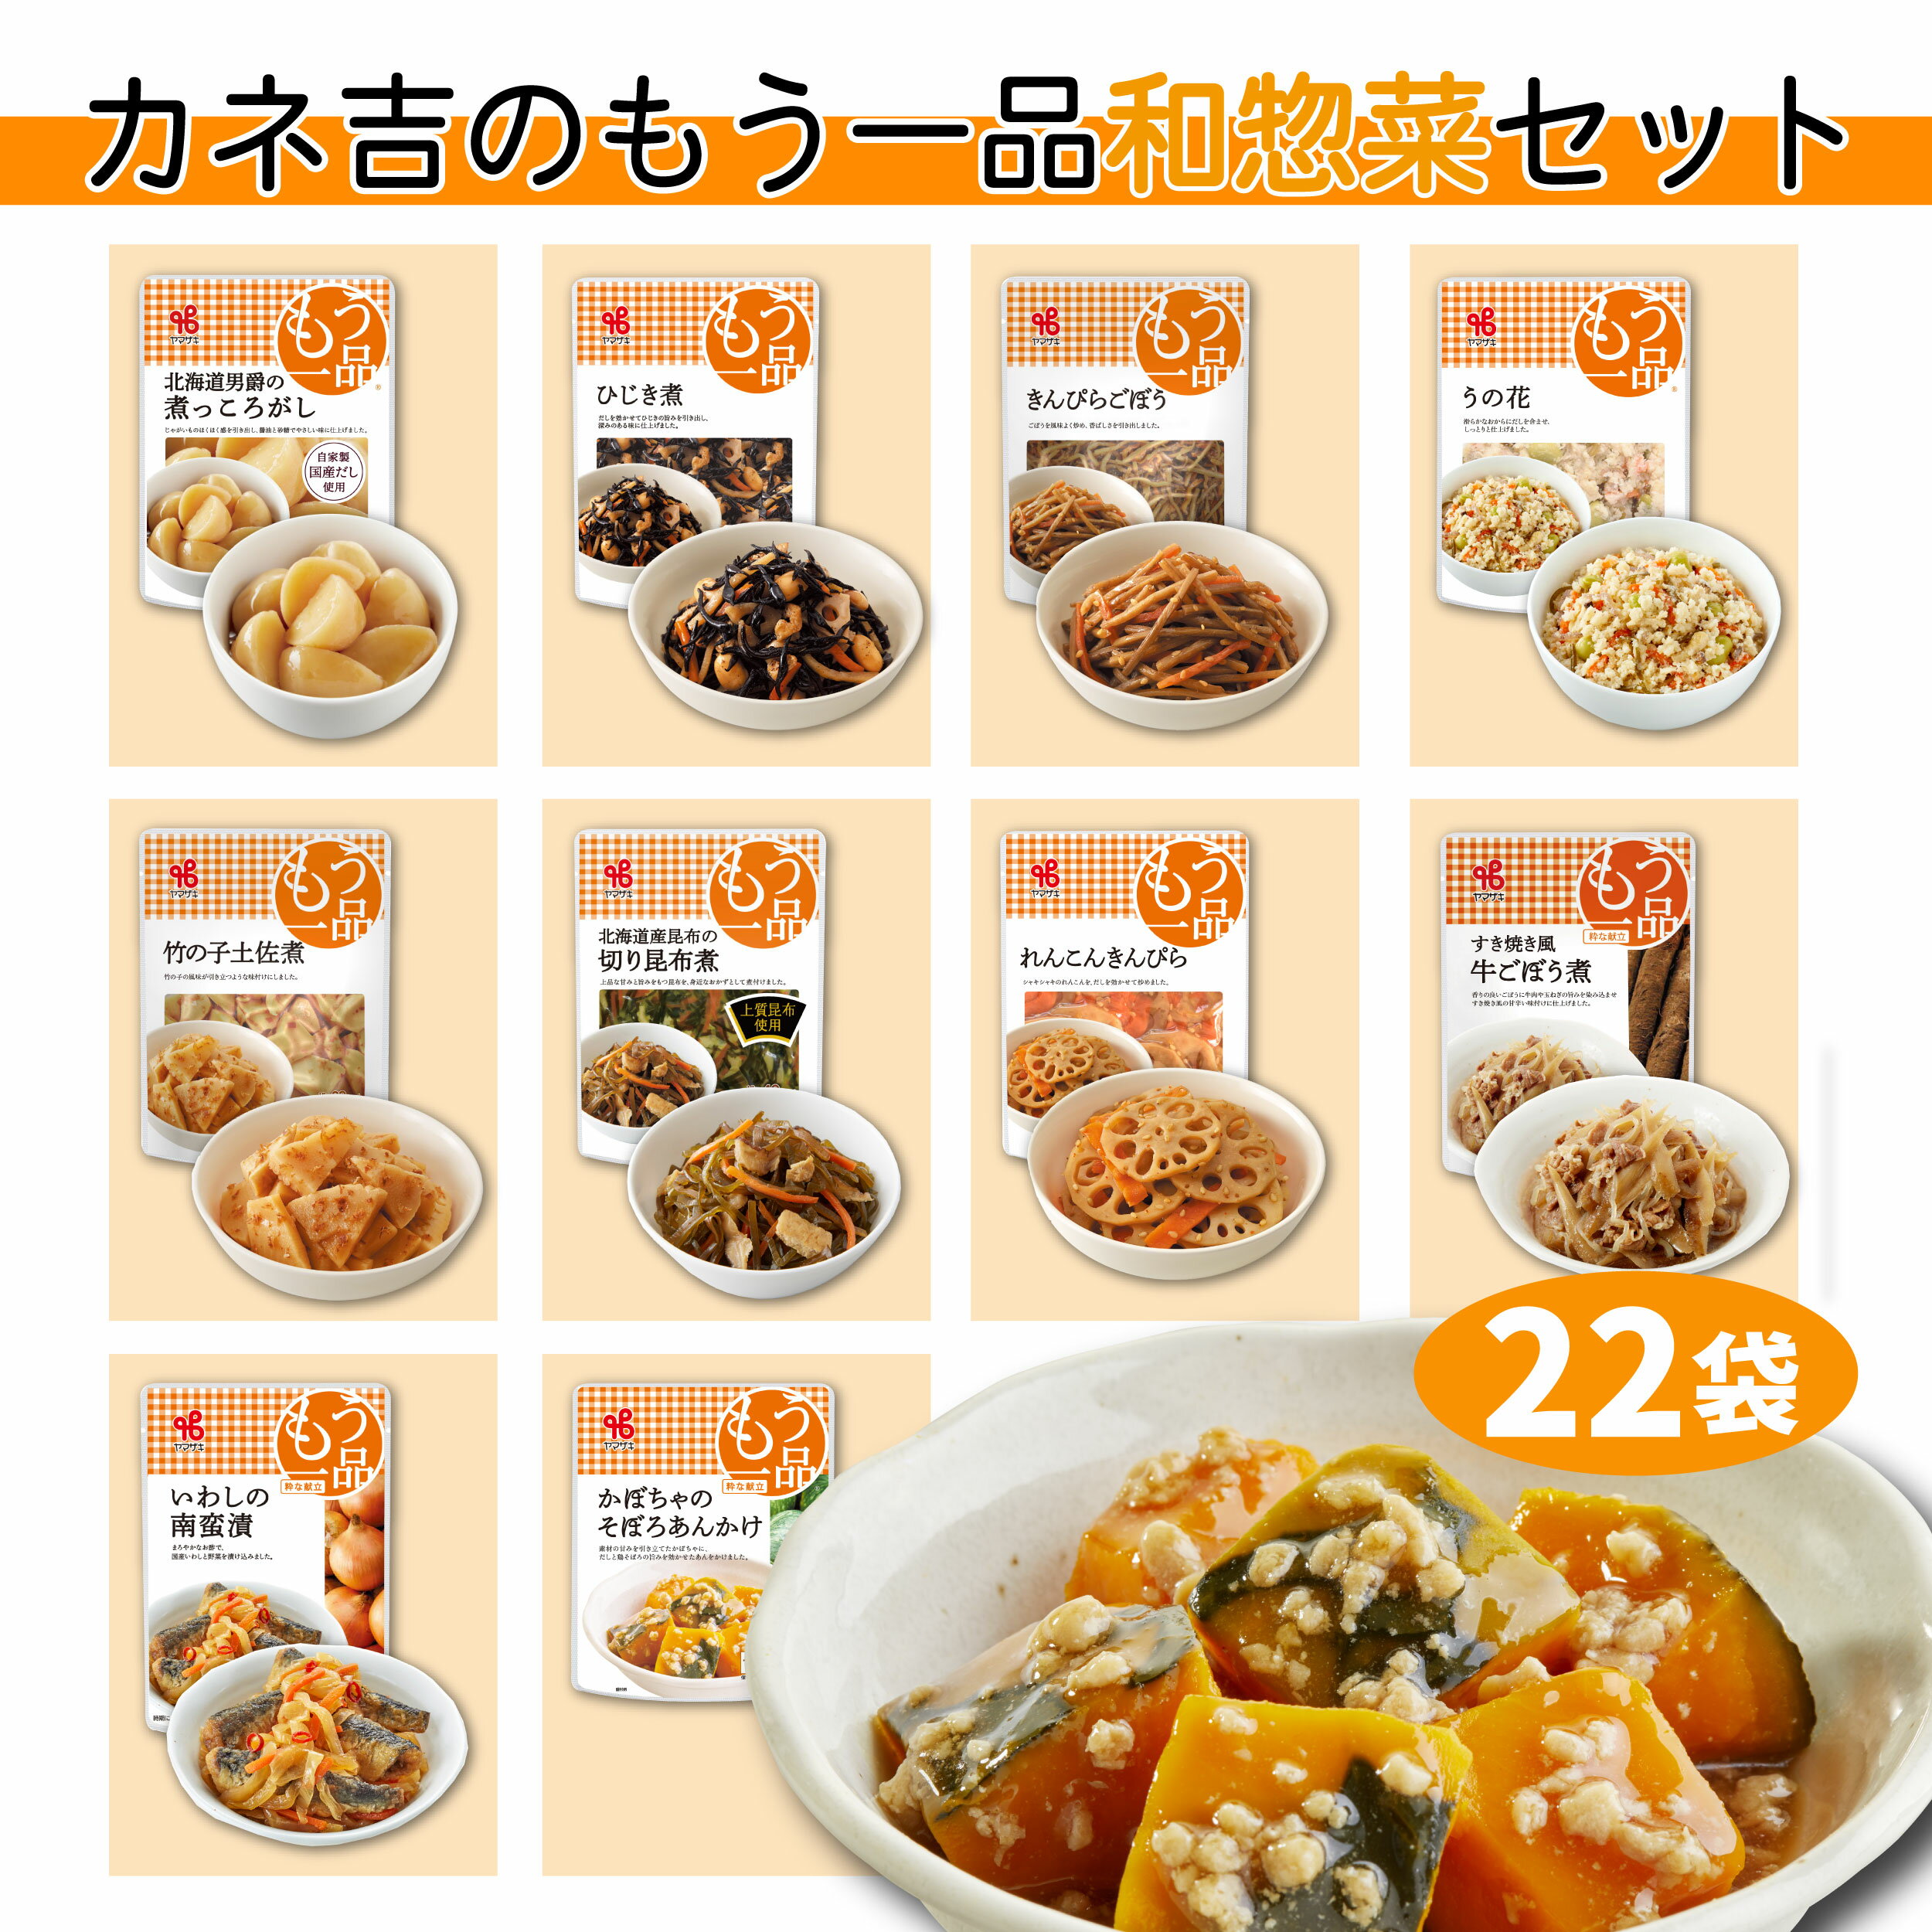 吉野家 牛丼の具【30食詰合せ】120g×30袋 送料無料 冷凍